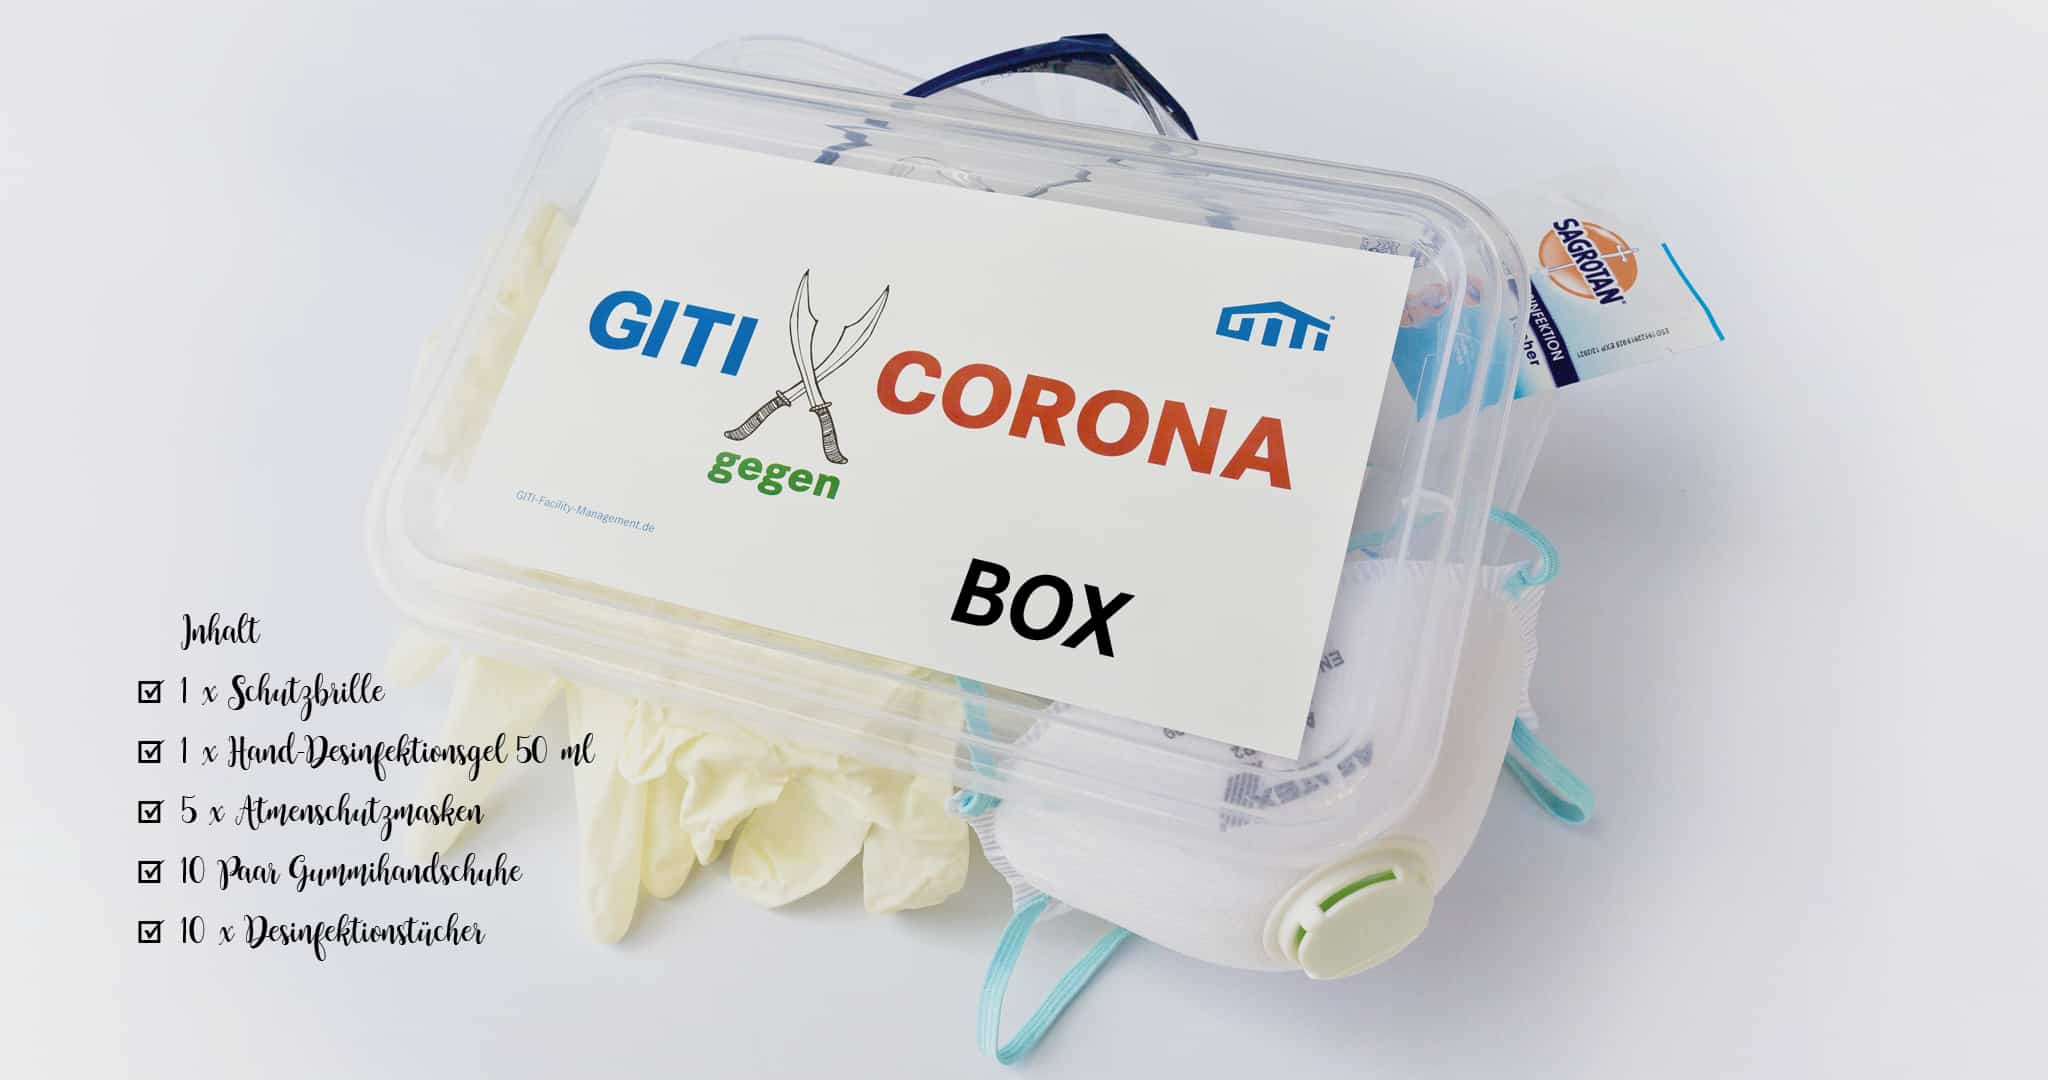 GITI GmbH Corona Überlebenspaket 2020